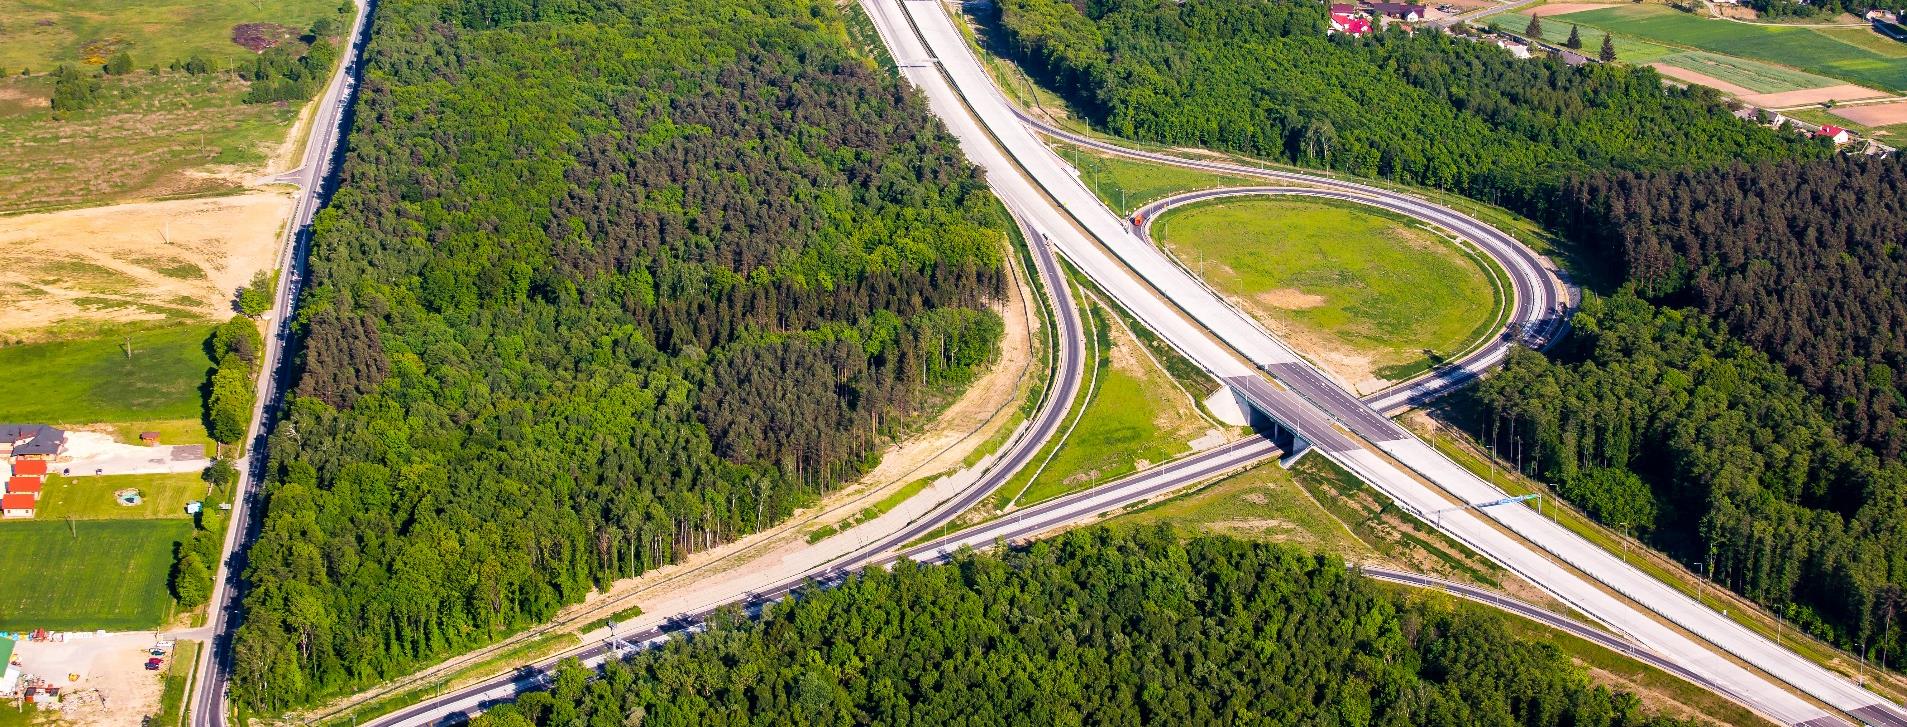 Budowa autostrady A-4 Rzeszów Korczowa Długość: 88,2 km - zadanie podzielone na 3 odcinki realizacyjne Odcinek Rzeszów-Jarosław w budowie z planowanym